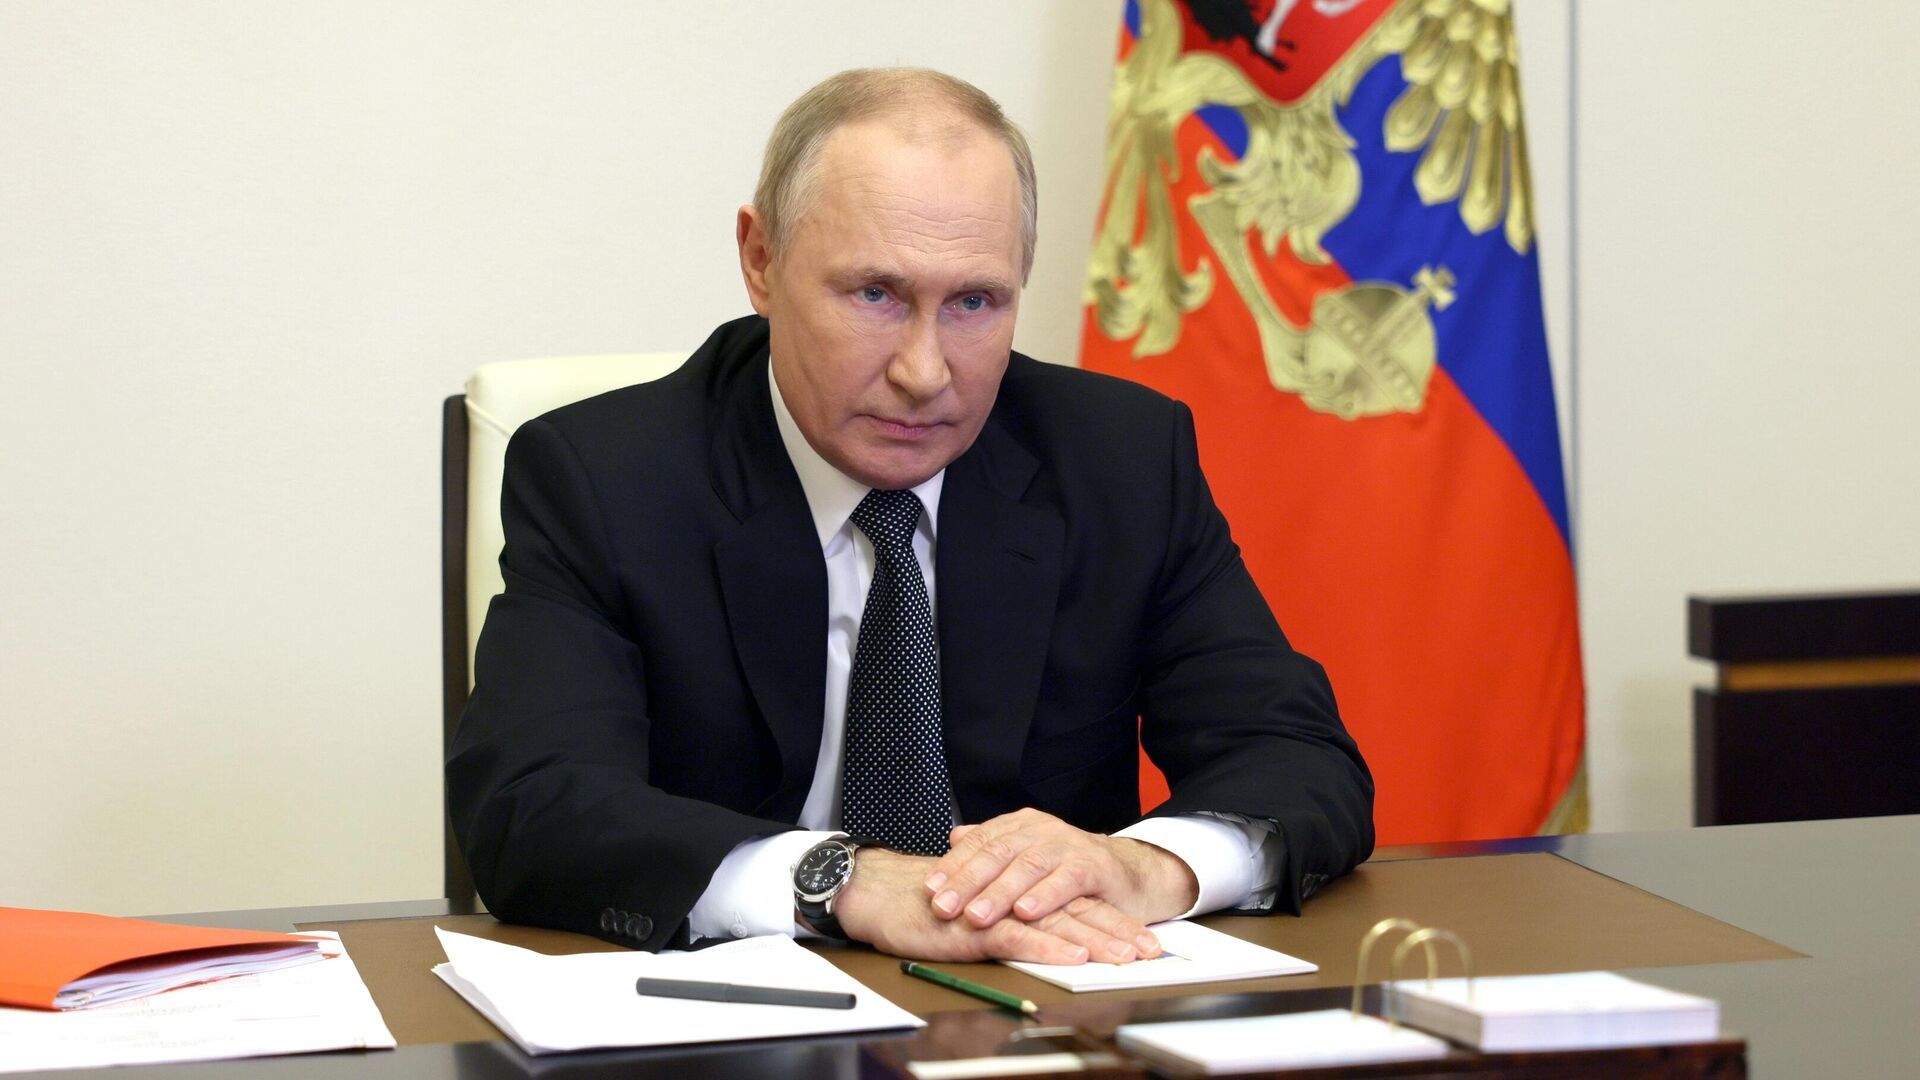 Володимир Путін сказав, що не передав Зеленському послань про переговори